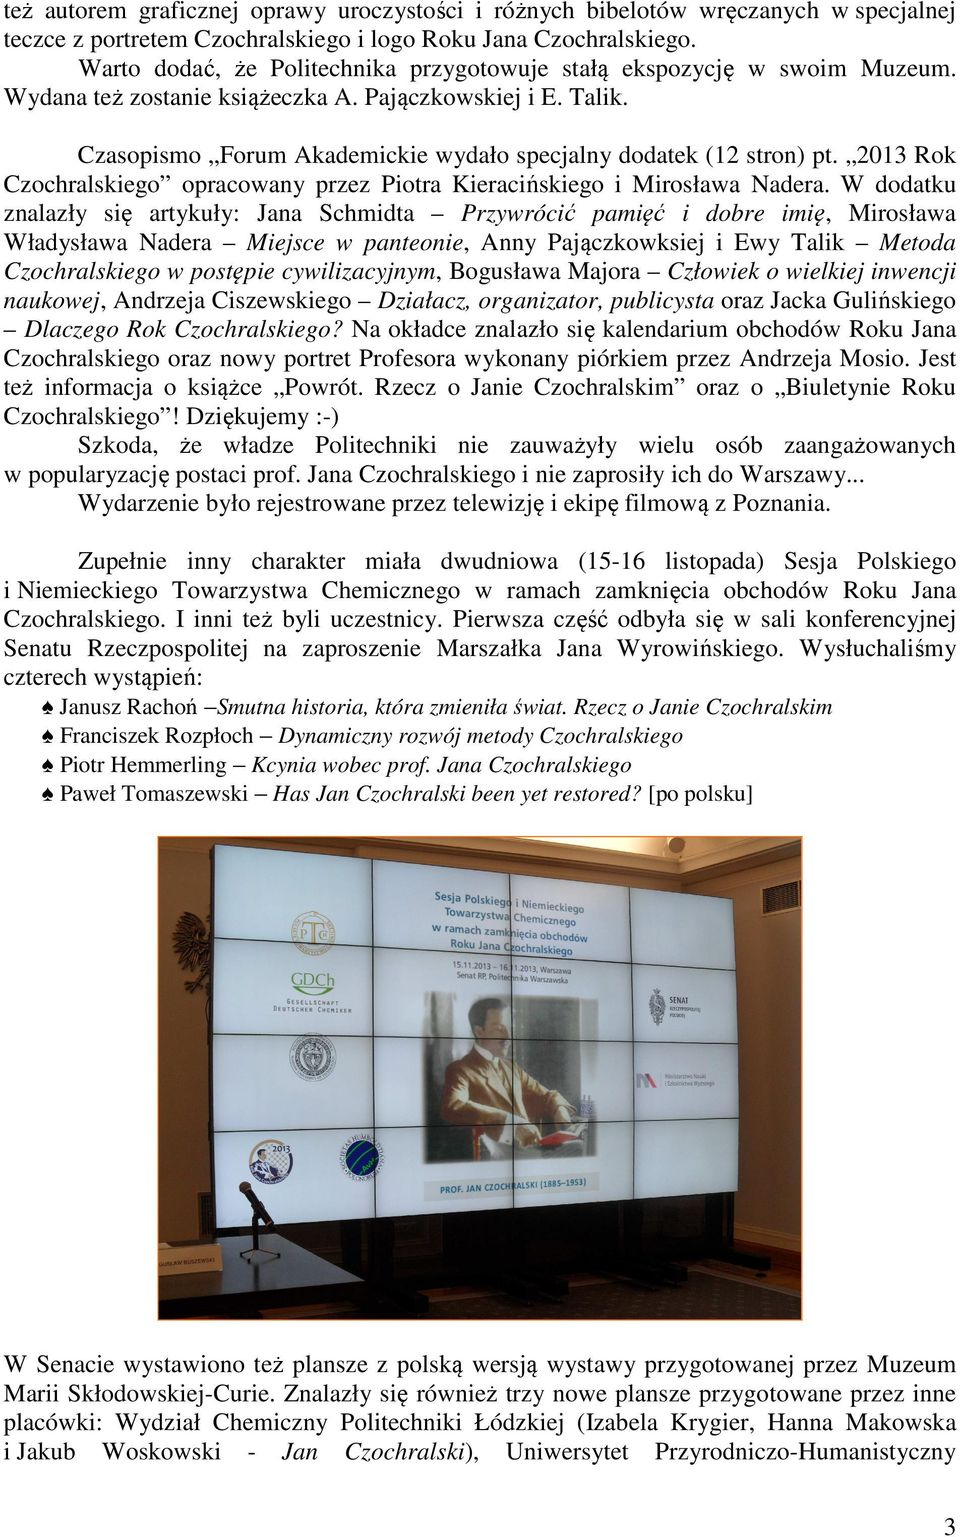 Czasopismo Forum Akademickie wydało specjalny dodatek (12 stron) pt. 2013 Rok Czochralskiego opracowany przez Piotra Kieracińskiego i Mirosława Nadera.